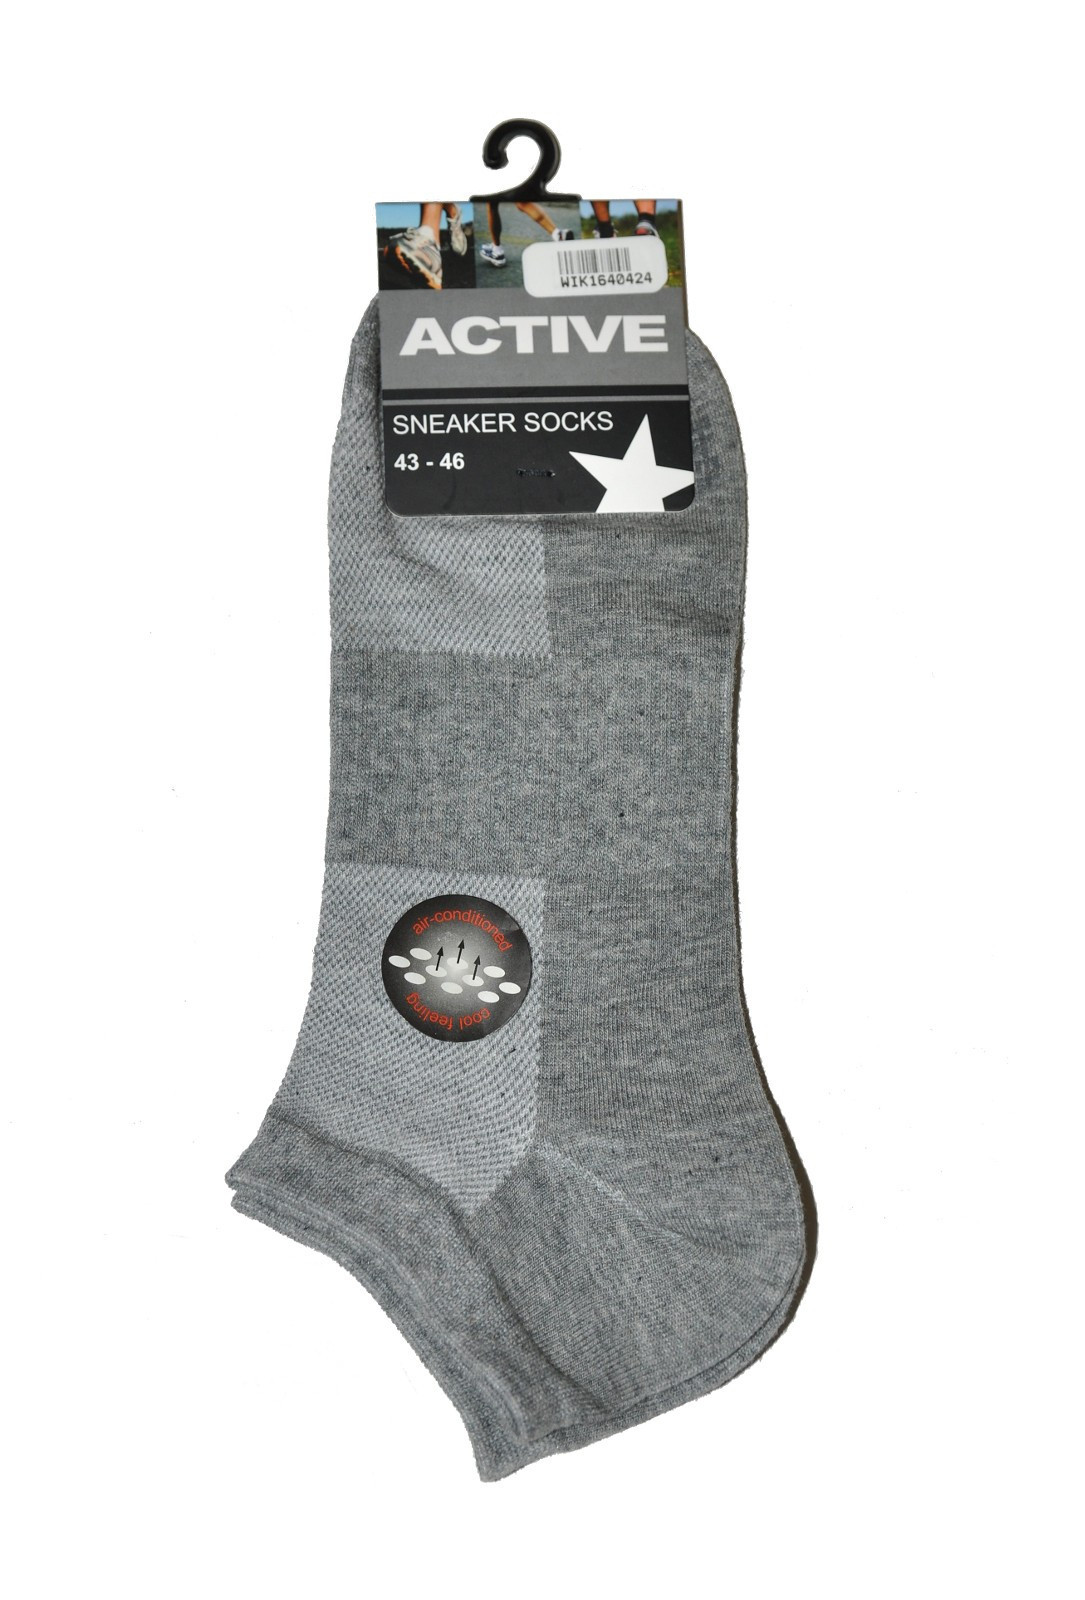 Pánské ponožky WiK 16404 Active 39-46 černá 43-46